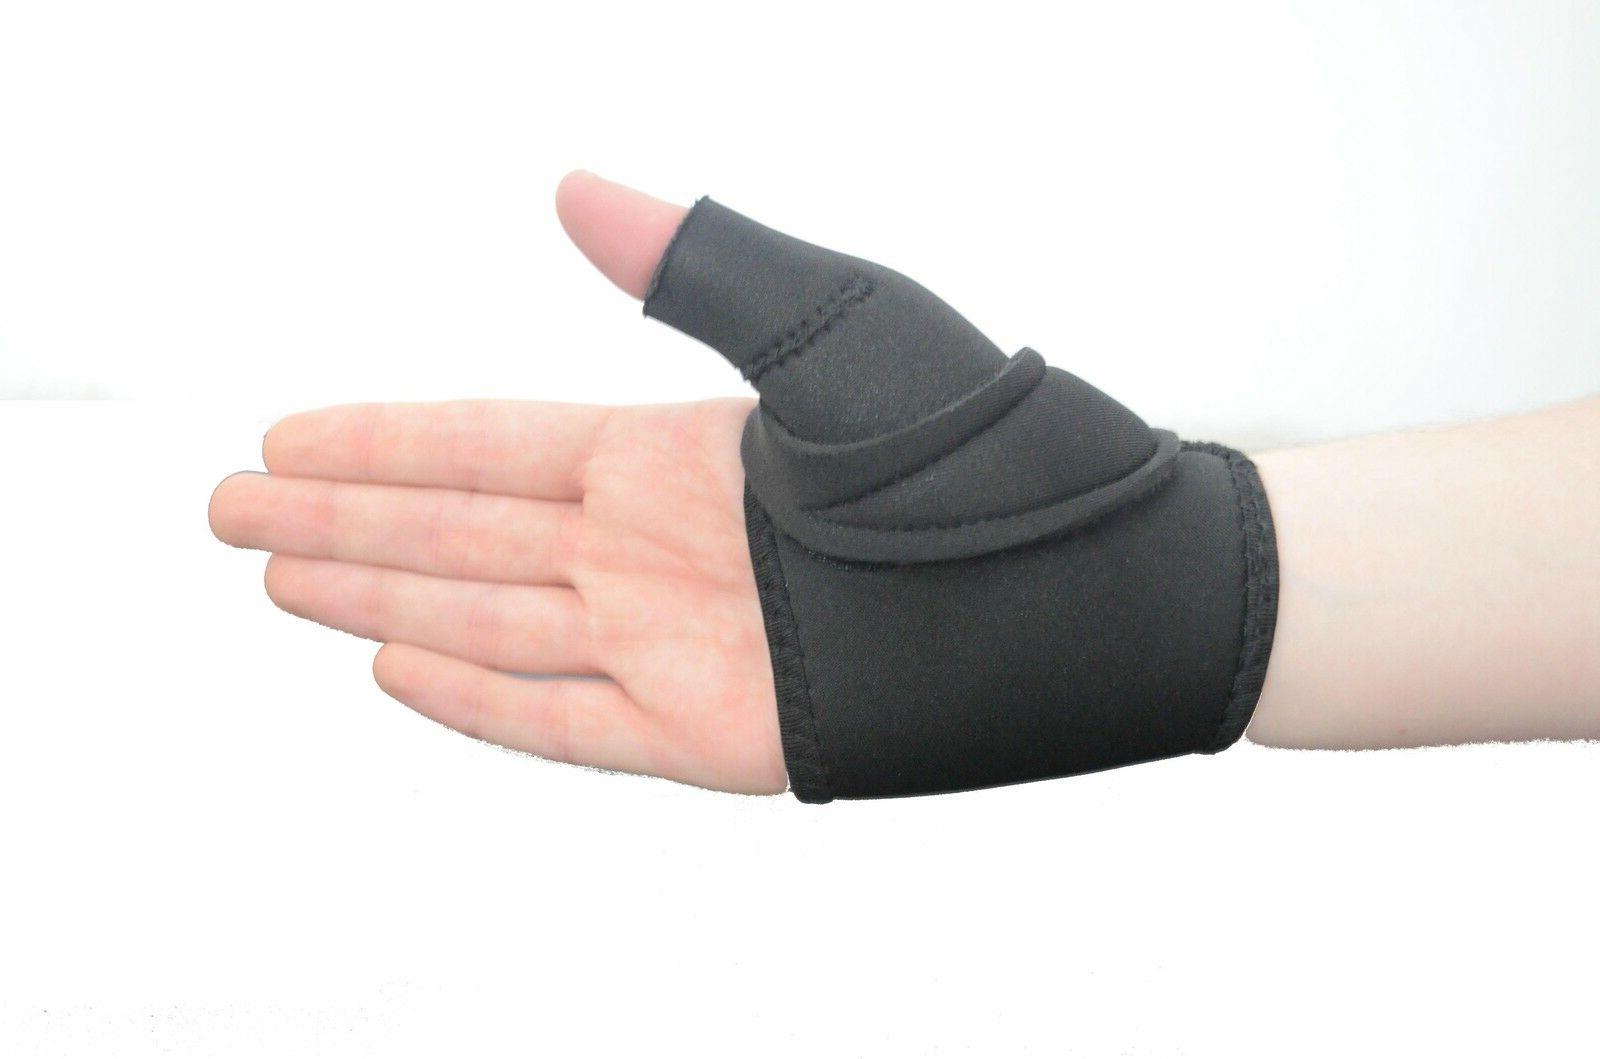 Thumb Spica CMC Hand Support Brace Arthritis Splint